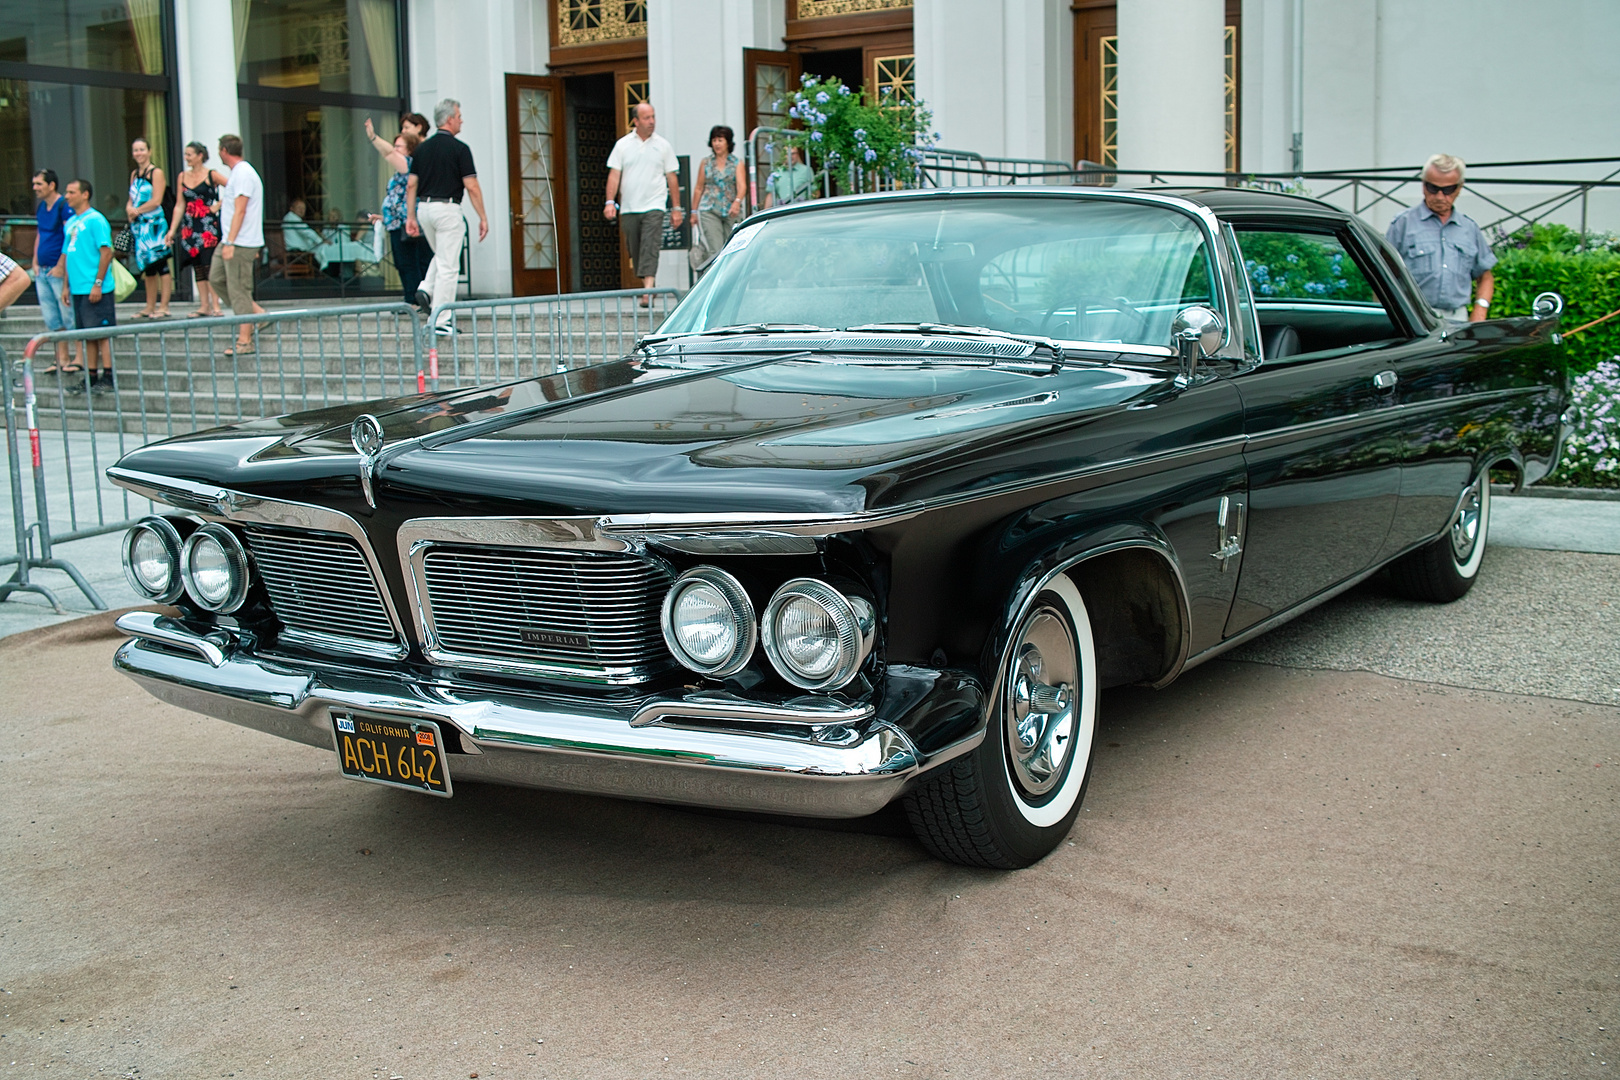 Imperial, einige Jahrzehnte die Luxusmarke des Chrysler Konzerns